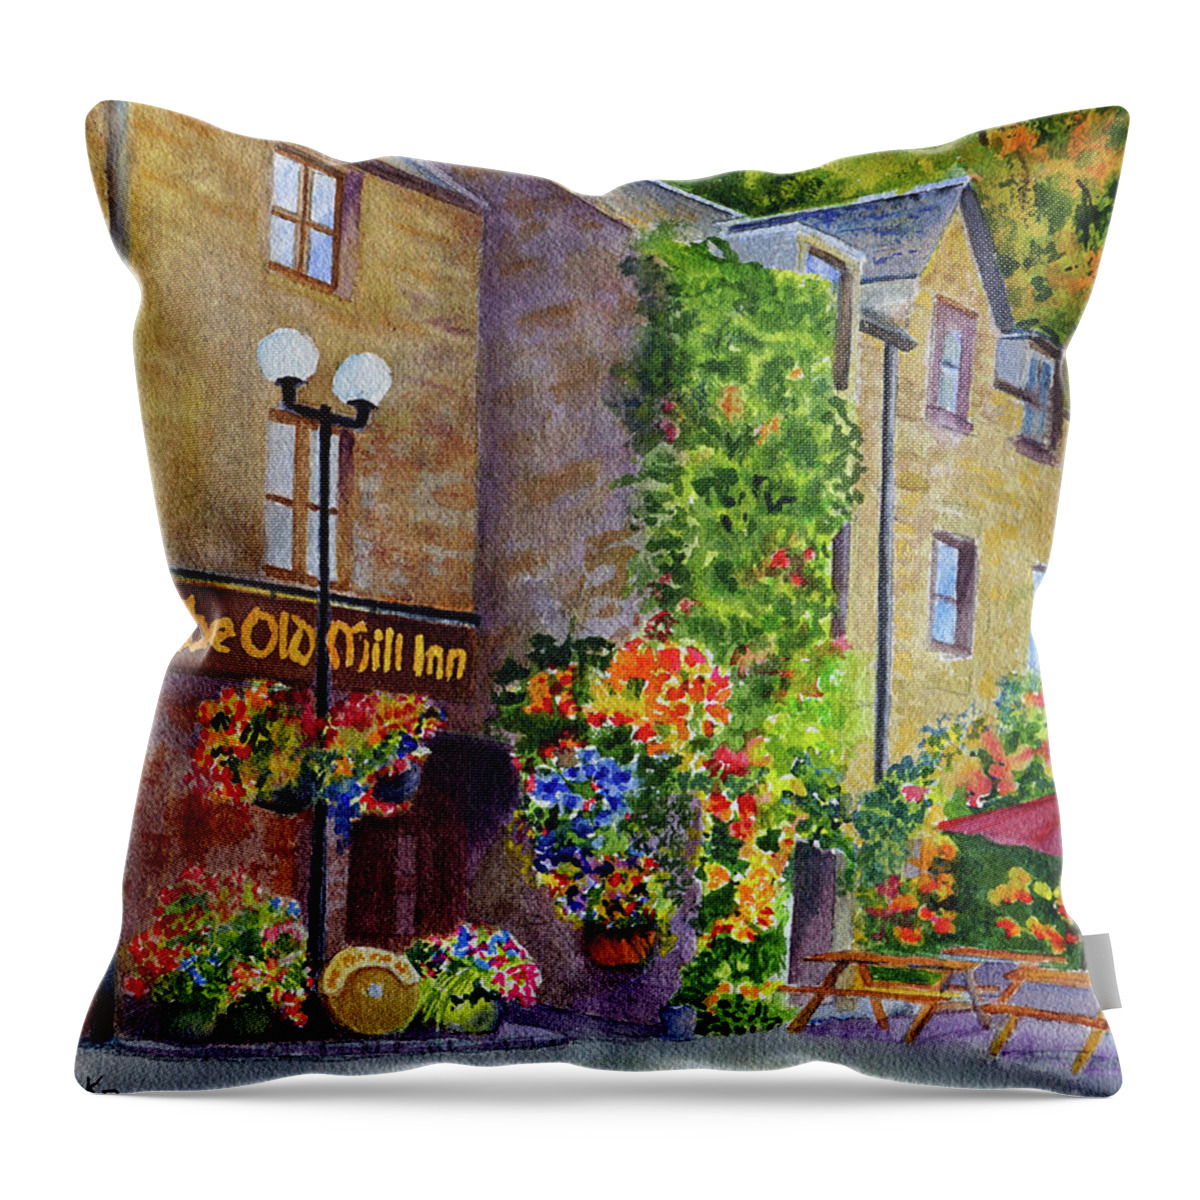 Scotland Throw Pillow featuring the painting The Old Mill Inn by Karen Fleschler